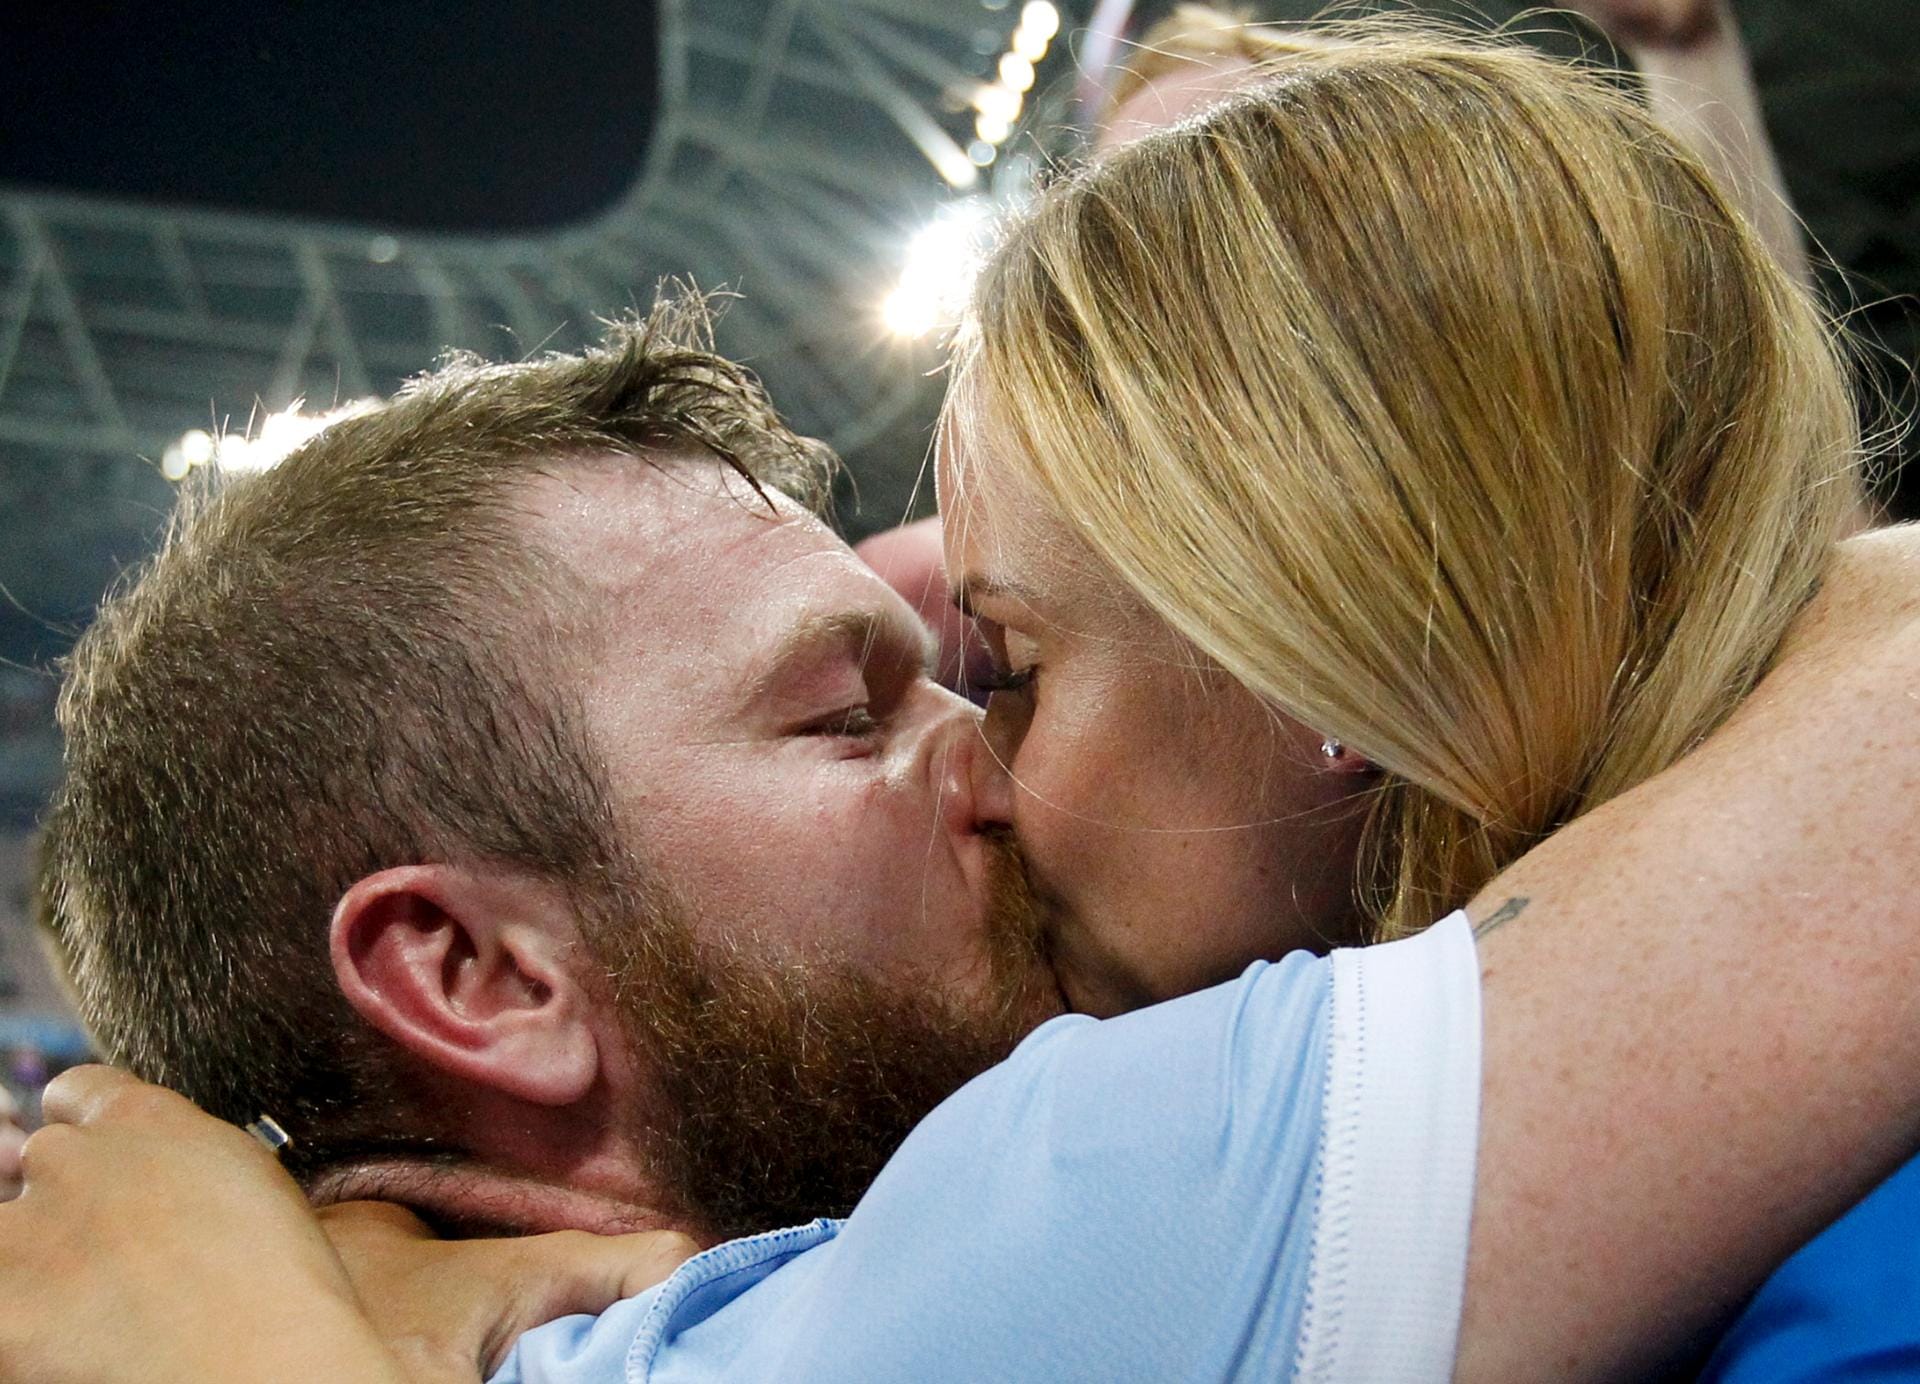 Islands Kapitän Aron Gunnarsson und seine Freundin Kristbjörg Jónasdóttir umarmen und küssen sich nach dem sensationellen Sieg der Wikinger gegen England.